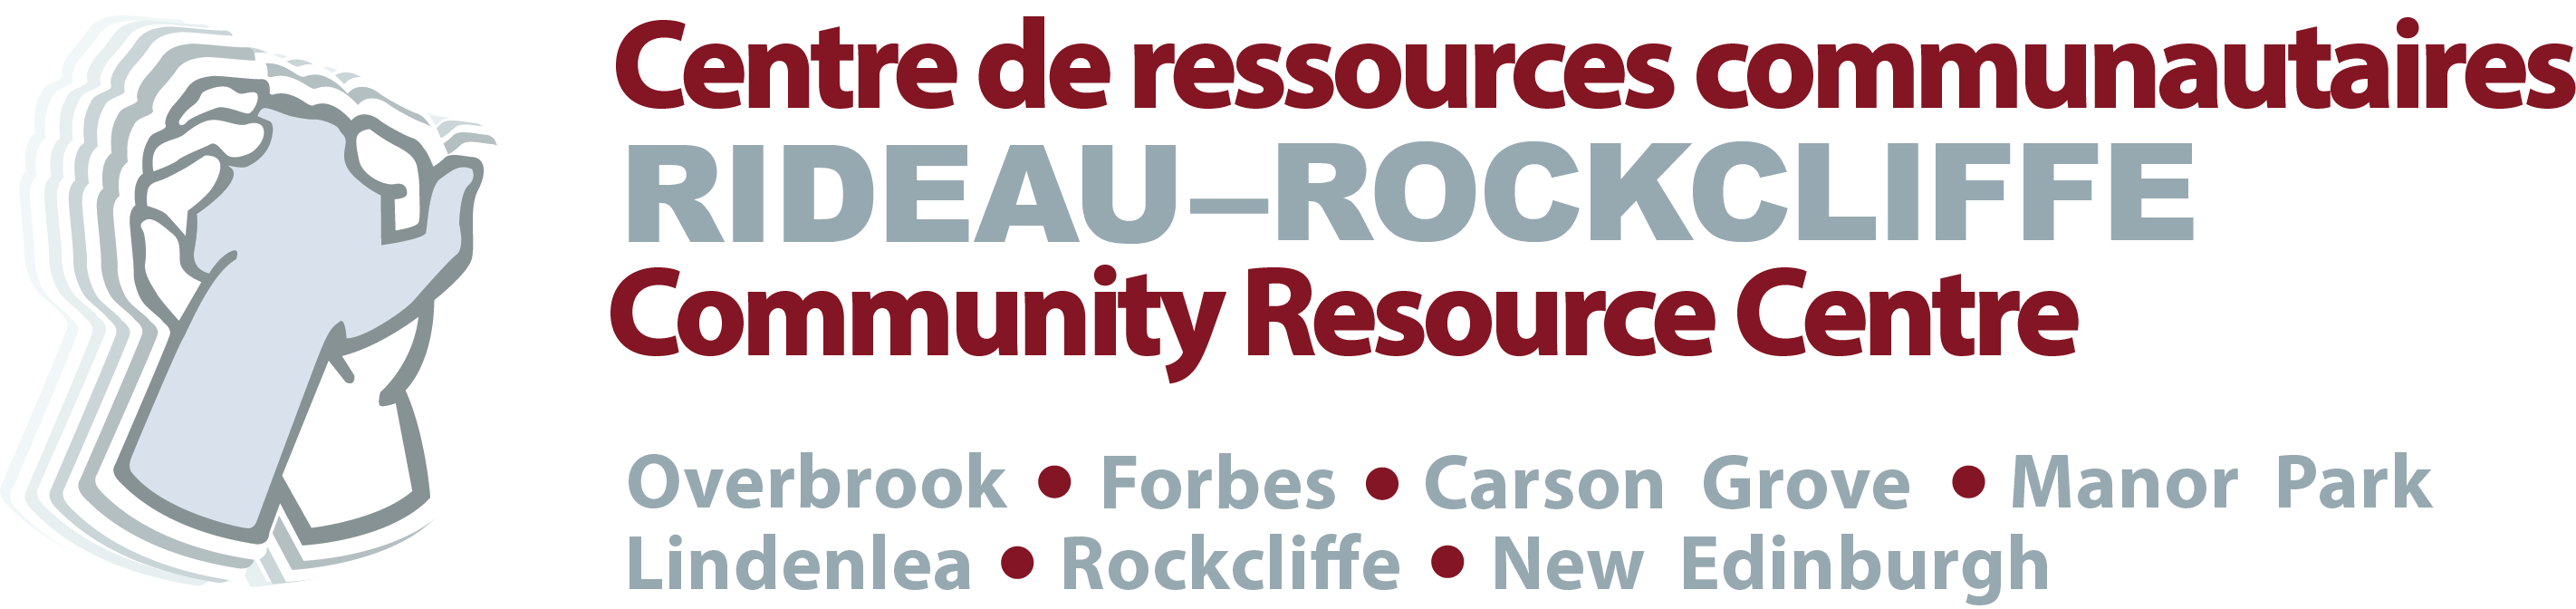 CENTRE DE RESSOURCES COMMUNAUTAIRES RIDEAU-ROCKCLIFFE logo